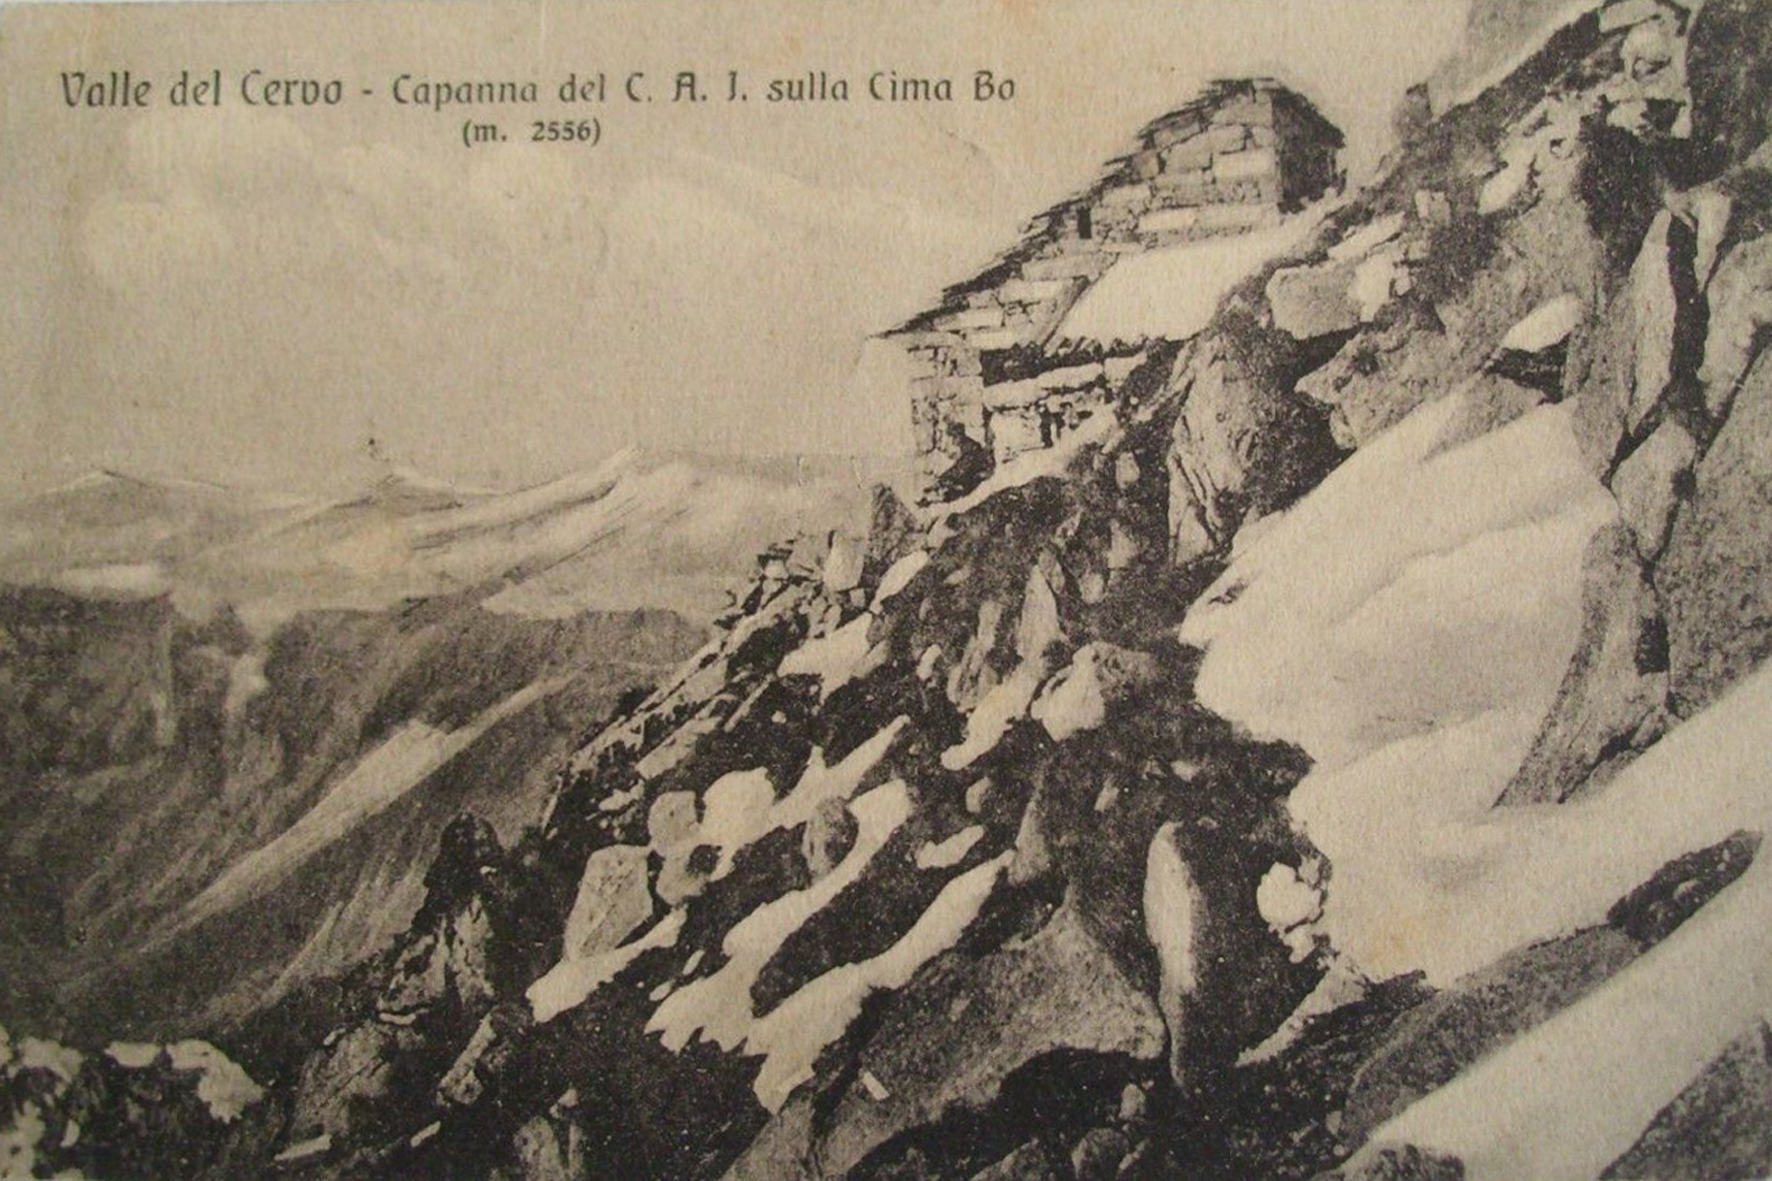 La capanna del CAI sulla cima del Bo in una cartolina postale di inizio Novecento.